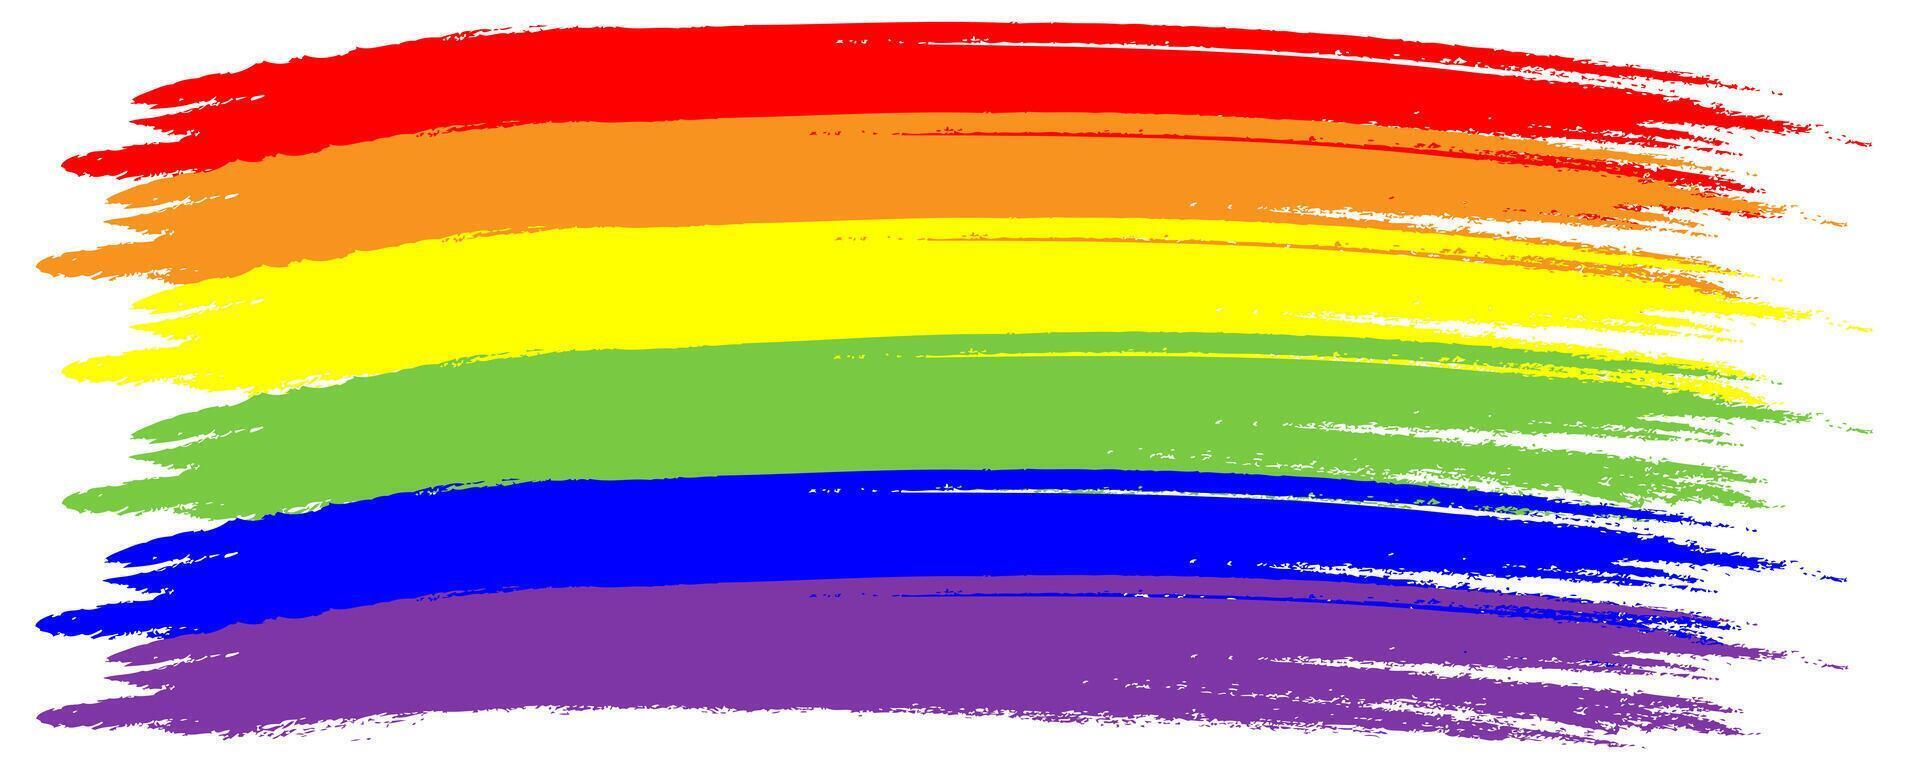 arco-íris. imitação do aquarela. brilhante vetor ilustração.vermelho, laranja, amarelo, verde, azul, roxa texturizado listras. gay orgulho lgbt bandeira.